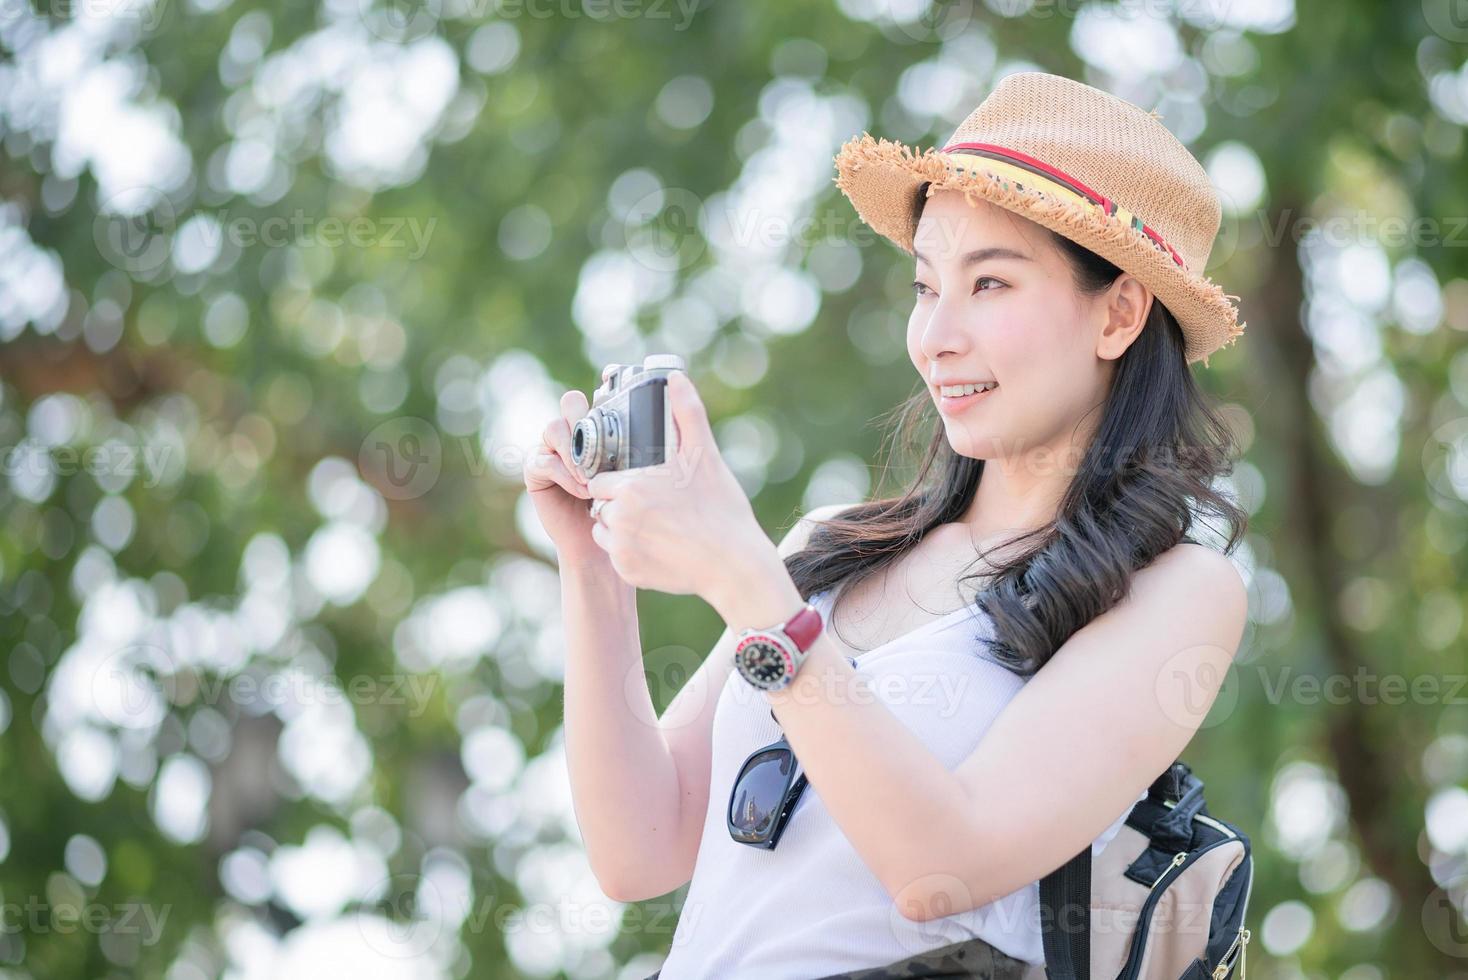 Hermosa mujer turista asiática disfruta tomando fotos con una cámara retro en un lugar turístico. viajes de vacaciones en verano.